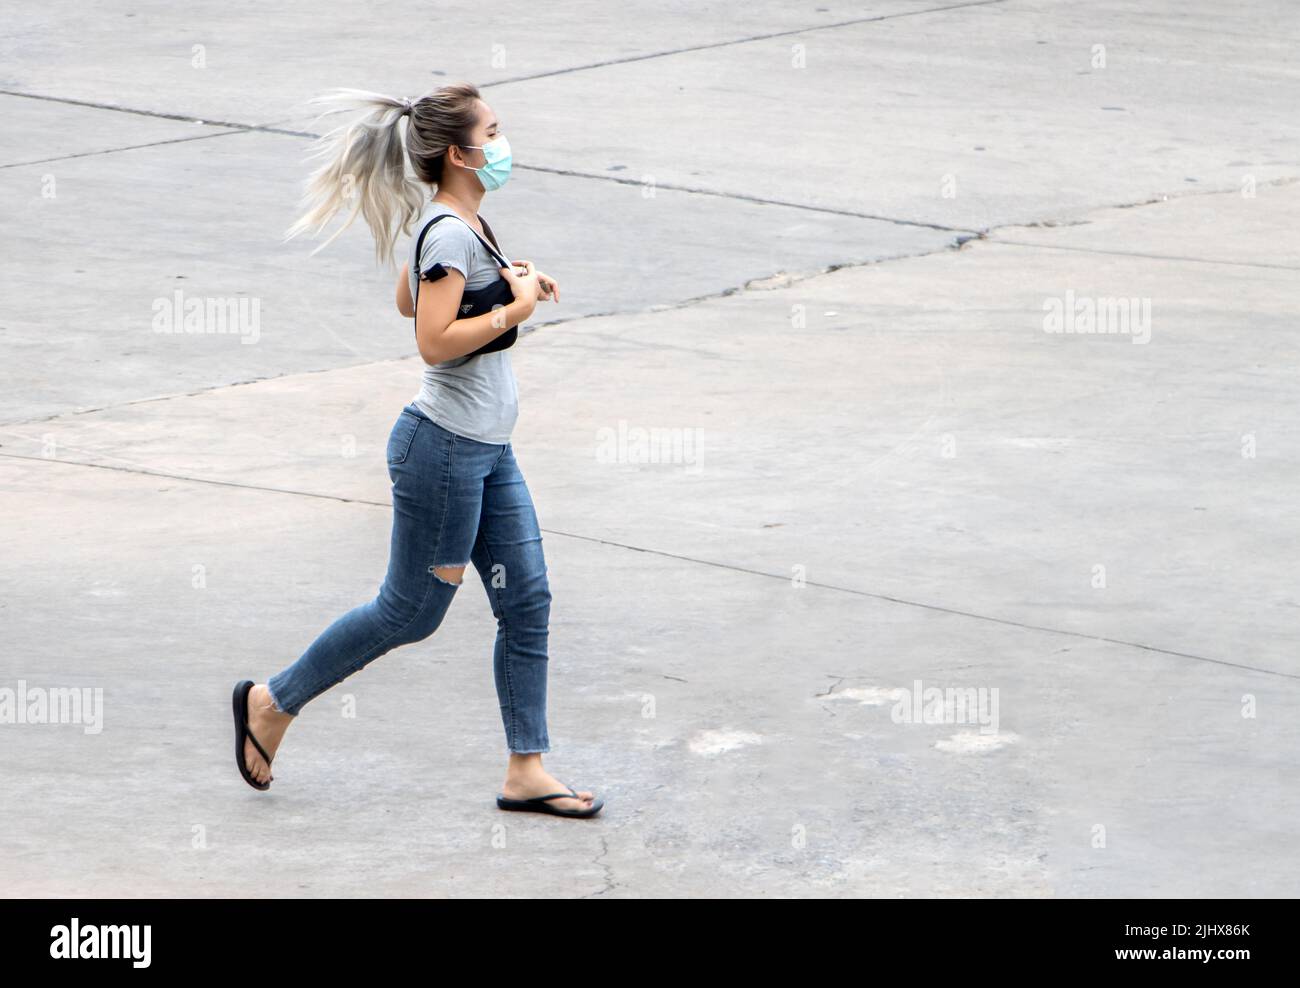 SAMUT PRAKAN, THAILANDIA, Apr 19 2022, Una giovane donna con una maschera sul suo volto sta correndo su una superficie di cemento in città Foto Stock